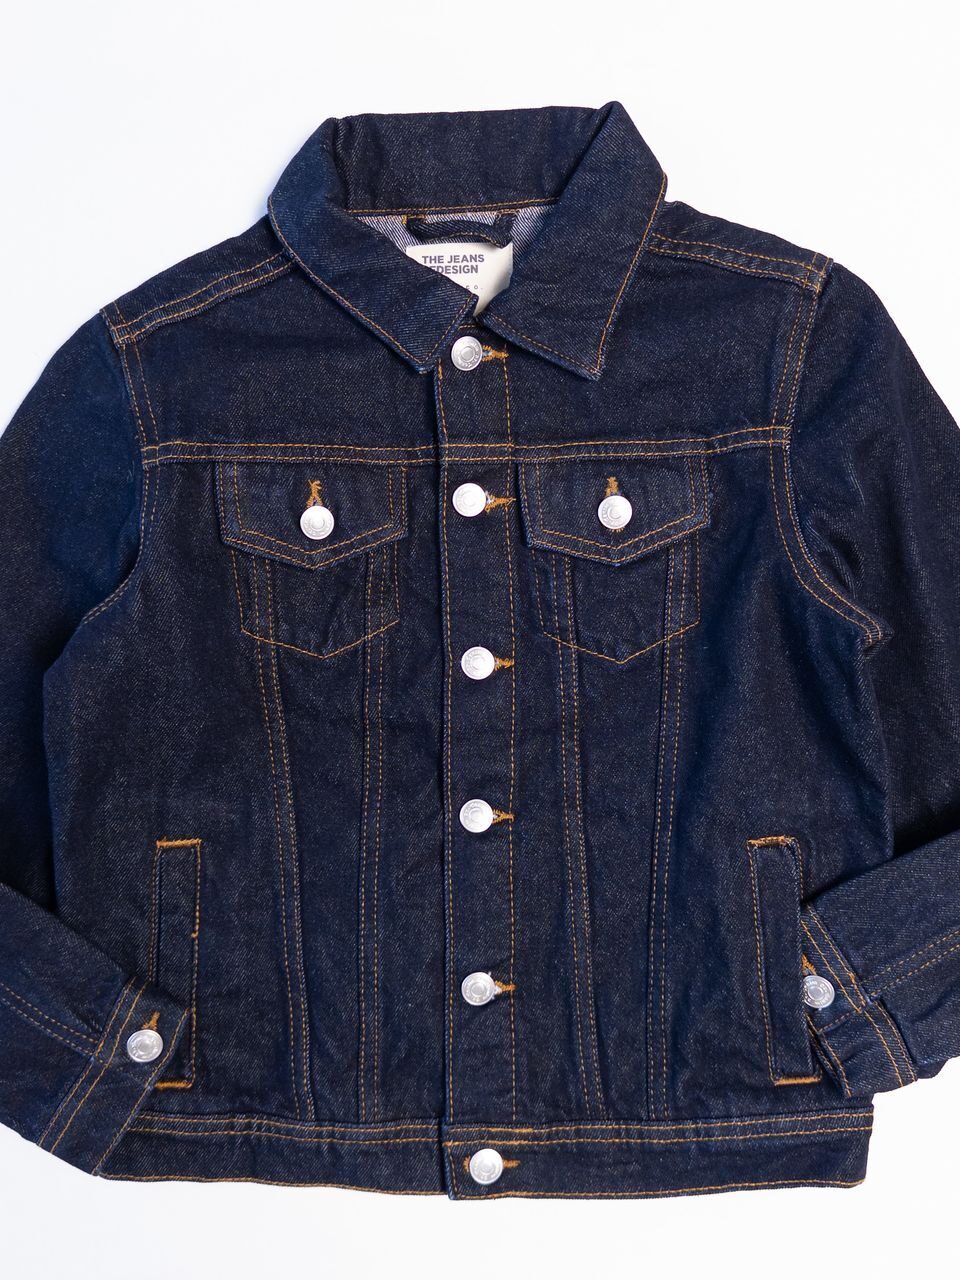 Джинсовая куртка для мальчика на пуговицах цвет темно-синий на рост 134 см Primark